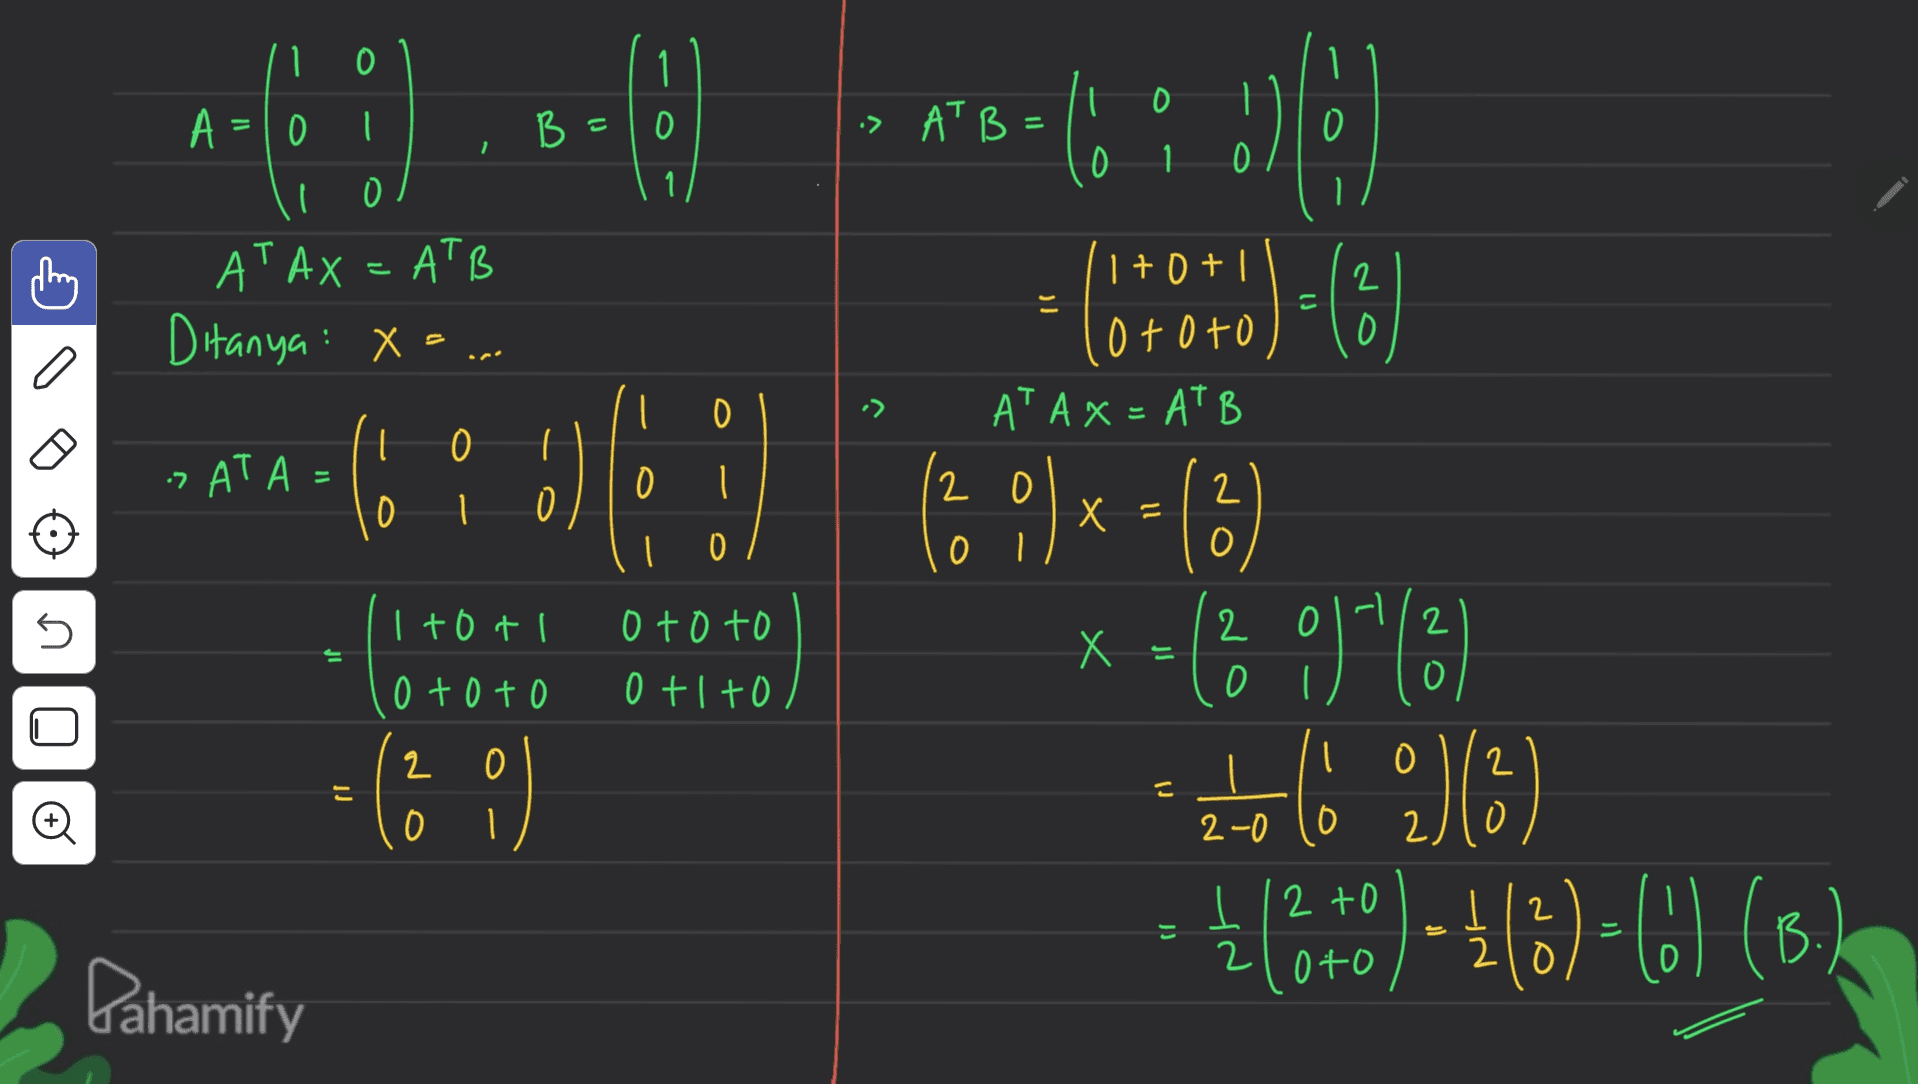 1 1 0 1 A =10 B = O :> ATB = 0 0 1 0 O i AT AX = ATB 2 Ditanya: X=... (1+0+ ototo AT A x = AT B O I 0 :AT A = :) 0 2 2 0 1 x = O 0 0 5 I toti 2 o toto 0 +1 +0 X = 는 o toto )x= (6) 9) 1/2 2) (5) 12+0) - 1/8)= (0) (B.) O 2 0 2 こ ( 0) O 0 2-0 0 12 2 = 2 loto Dahamify 